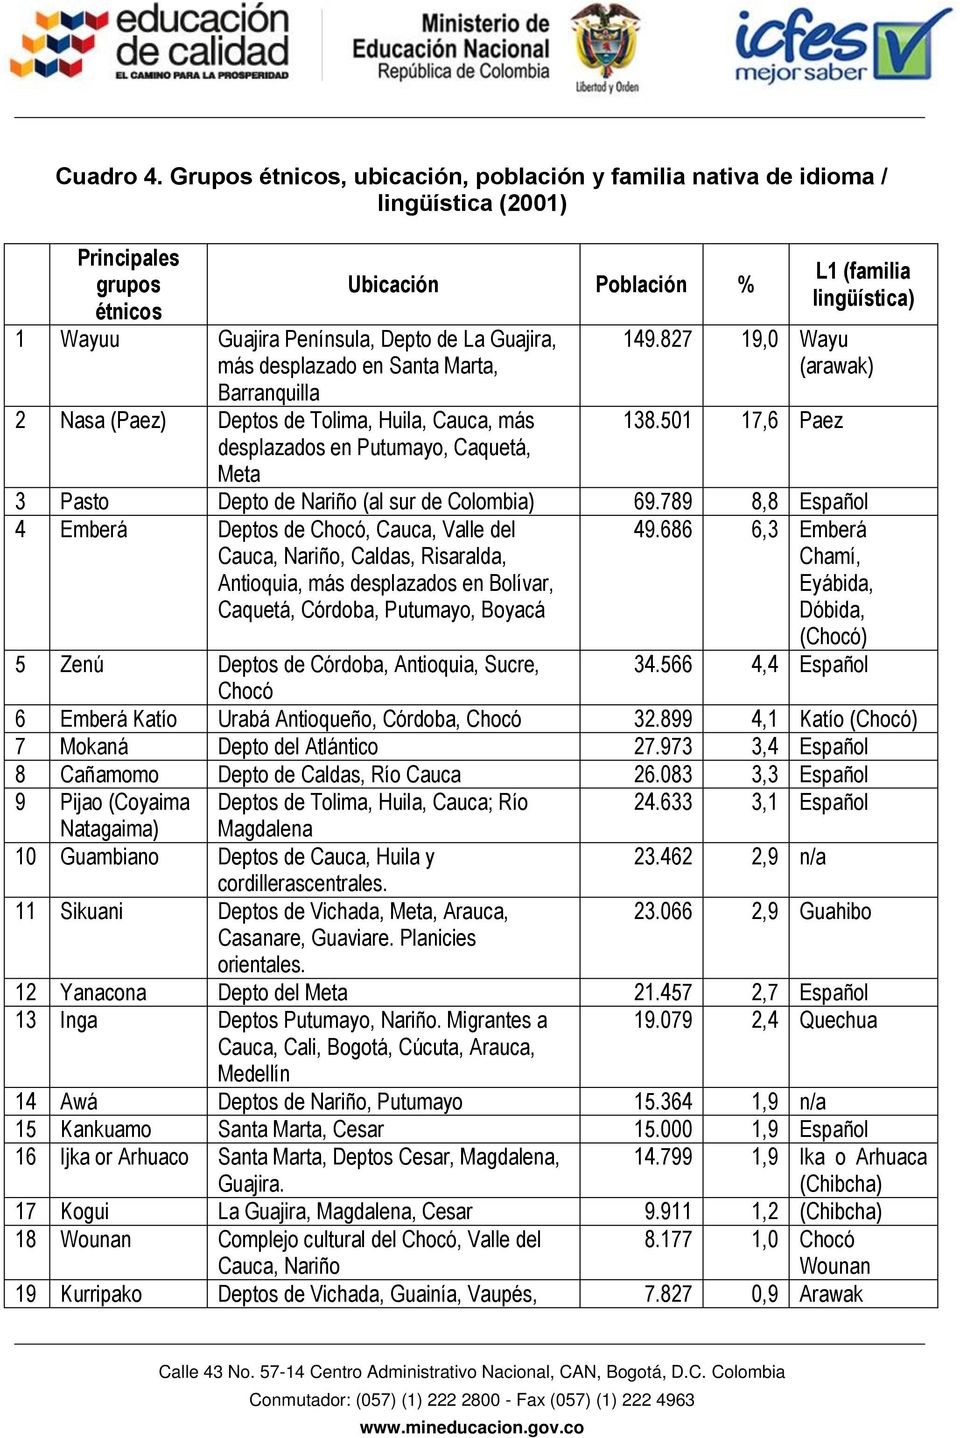 Barranquilla 2 Nasa (Paez) Deptos de Tolima, Huila, Cauca, más desplazados en Putumayo, Caquetá, Meta Ubicación Población % L1 (familia lingüística) 149.827 19,0 Wayu (arawak) 138.